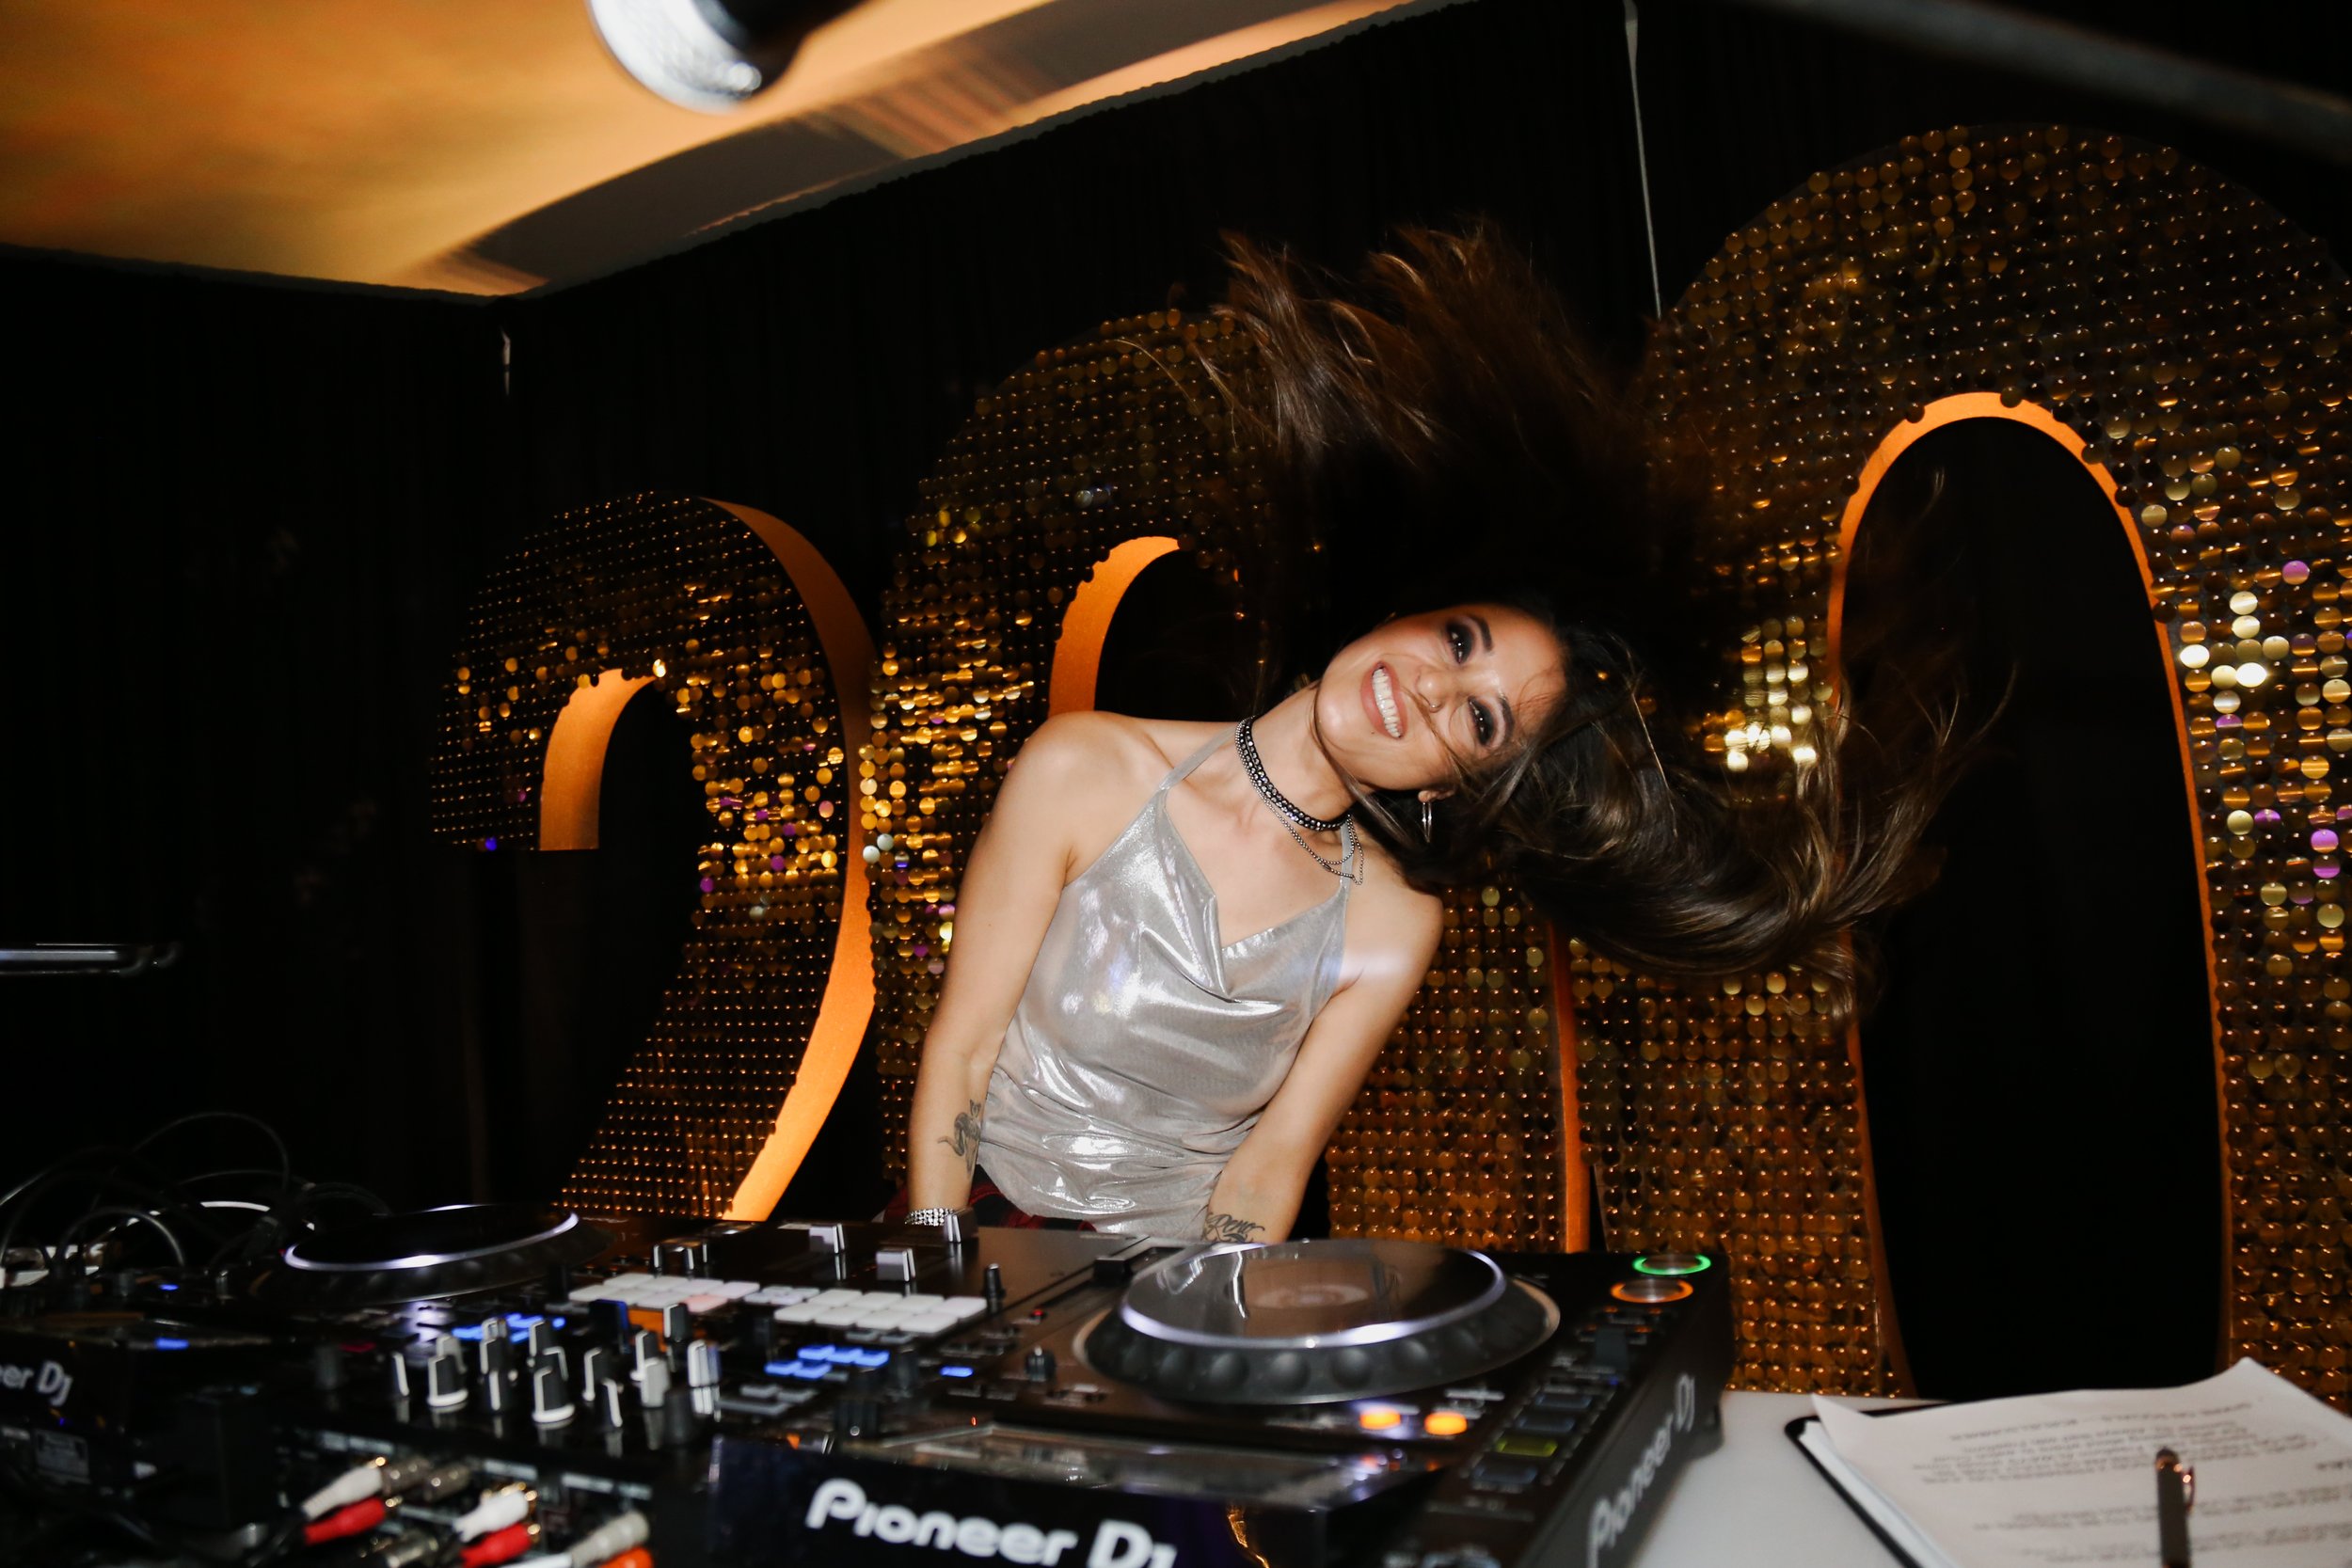 DJ Tessa Freeform Hulu Cruel Summer Prism DJs 1.jpeg